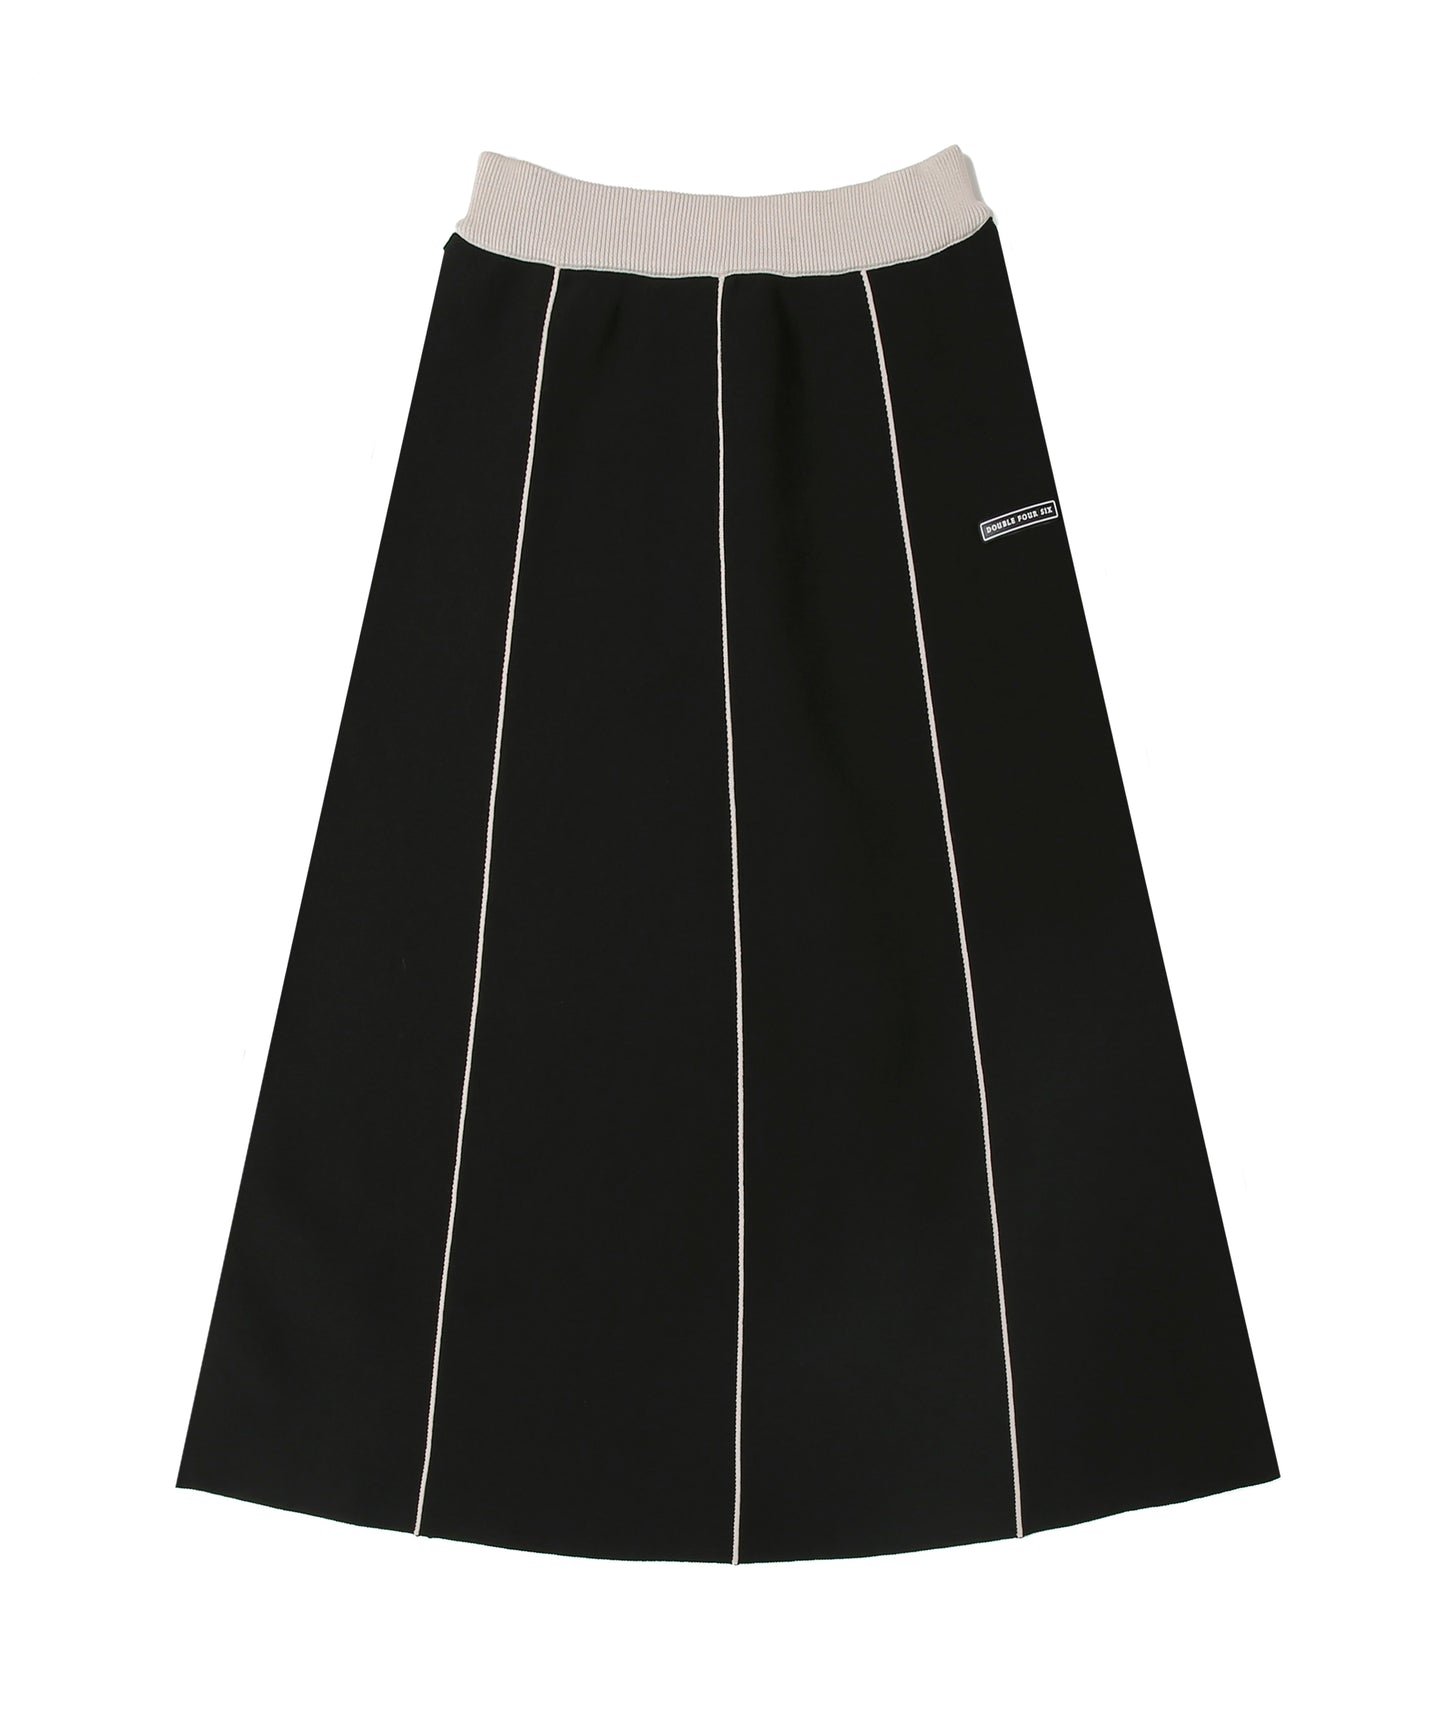 Sponge knit  Long Skirt Black